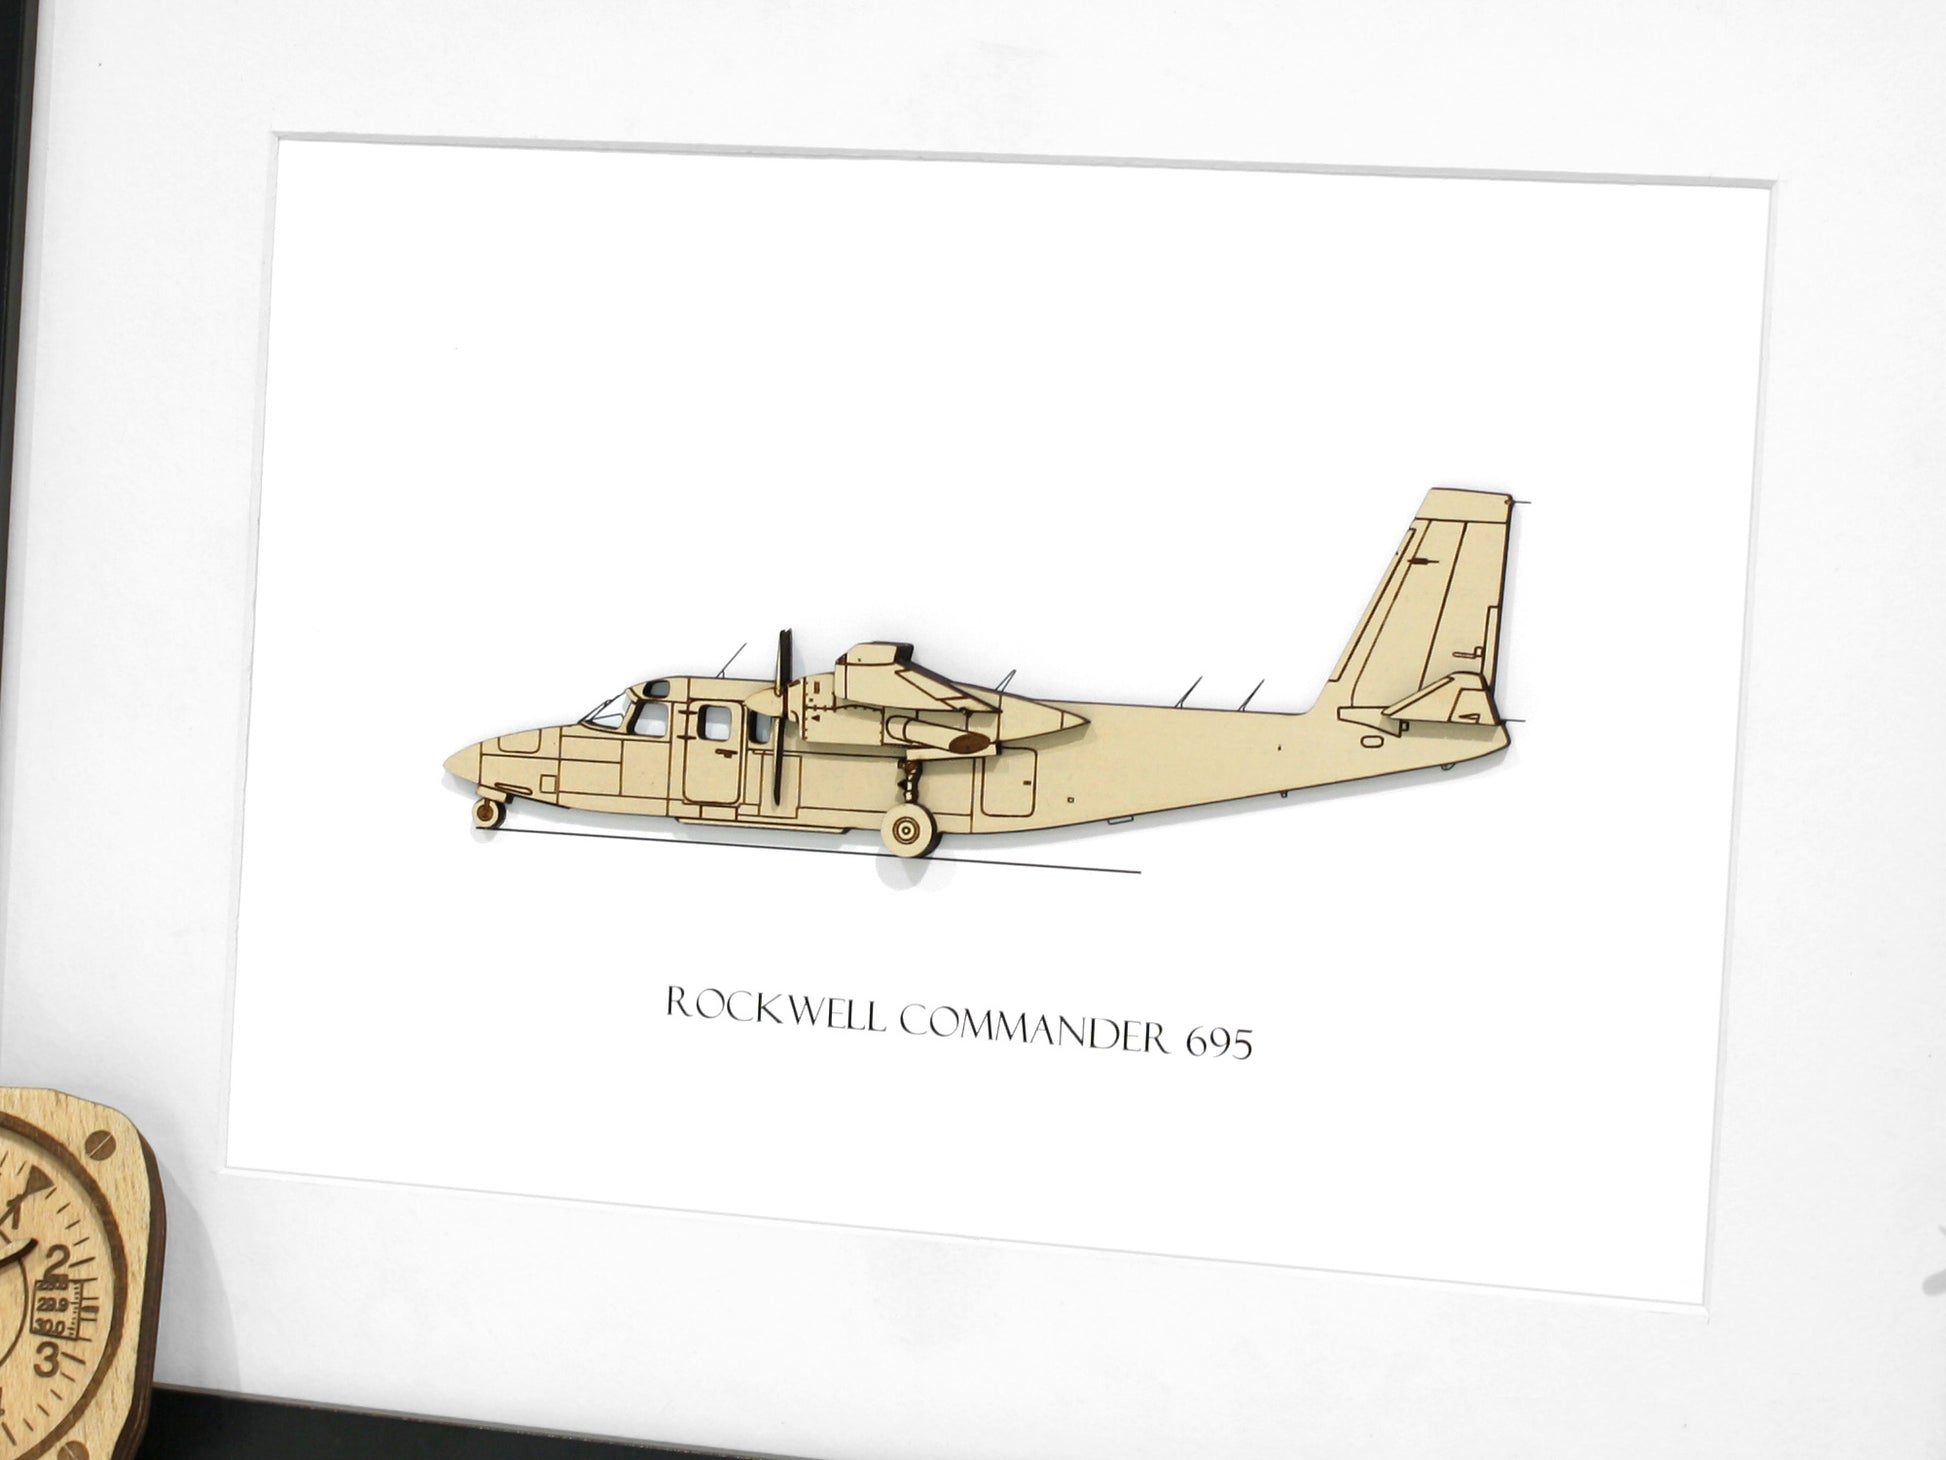 Rockwell Commander 695 aircraft blueprint art